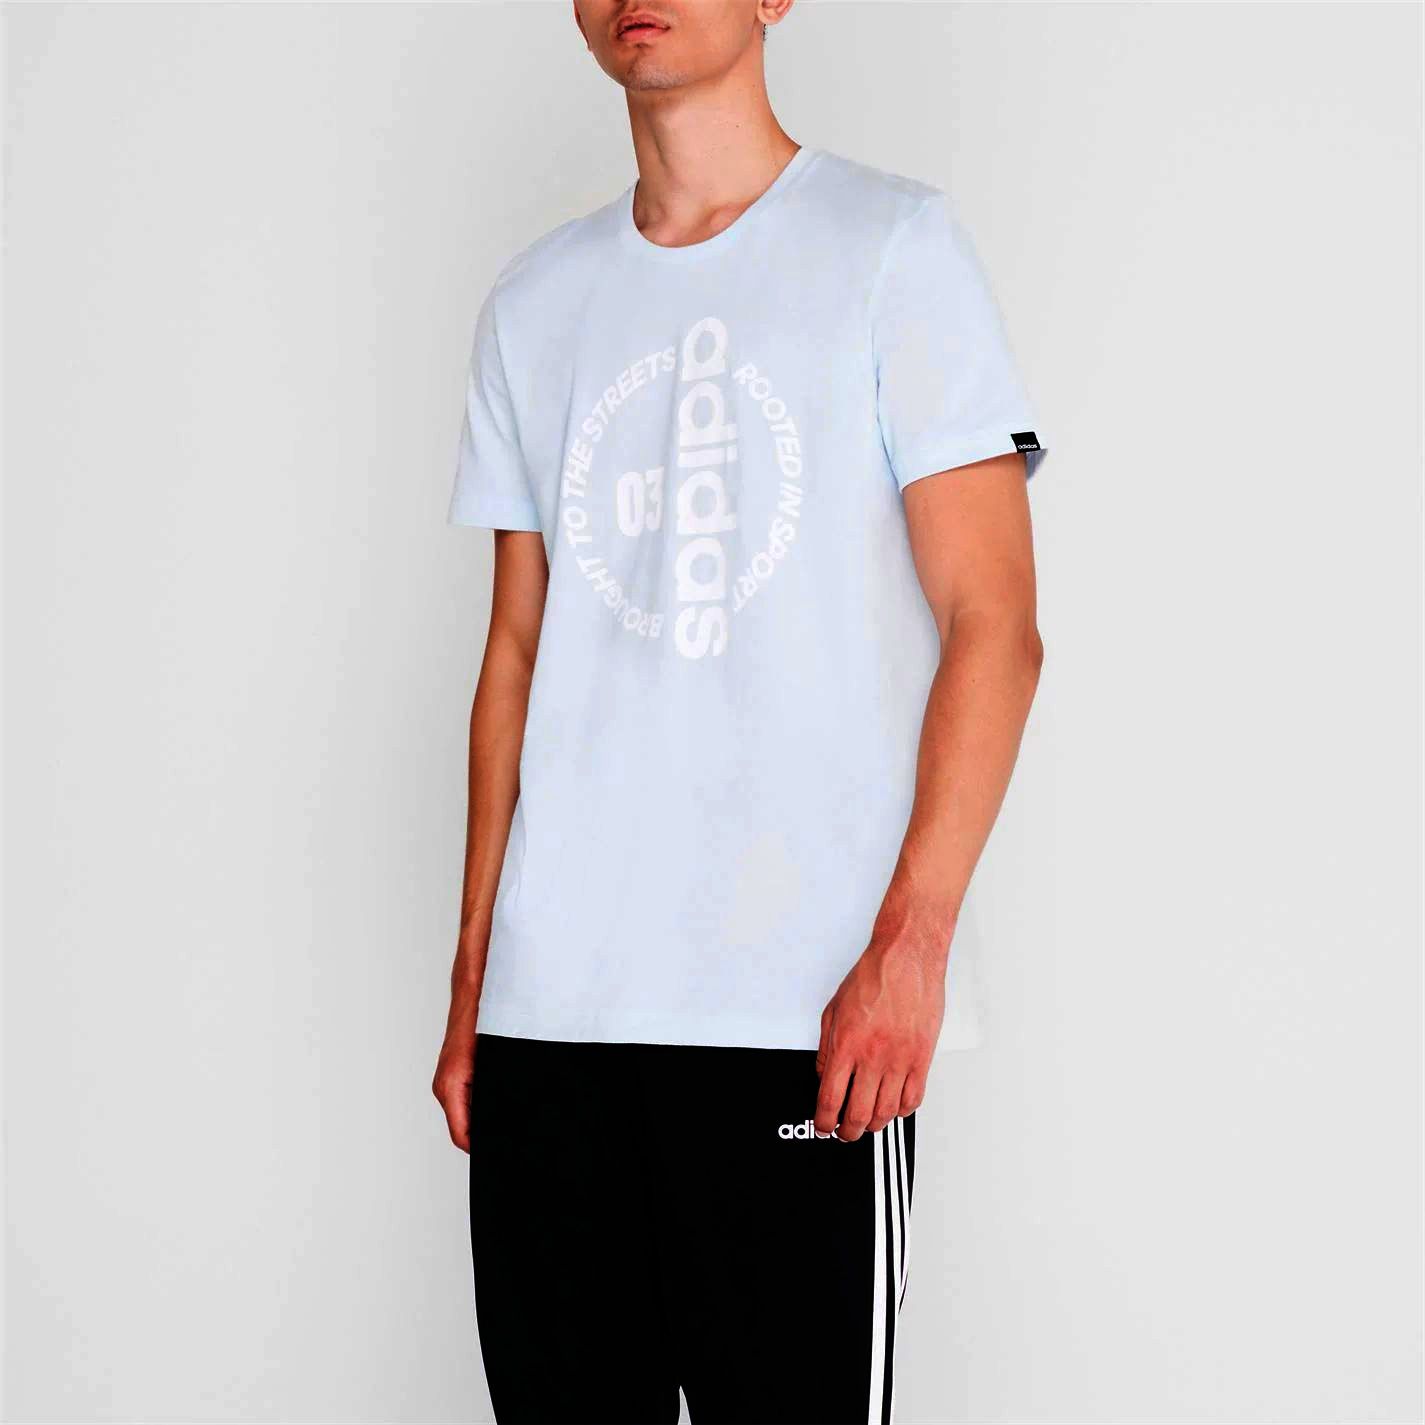 pánské tričko ADIDAS - LTBLUE/WHITE